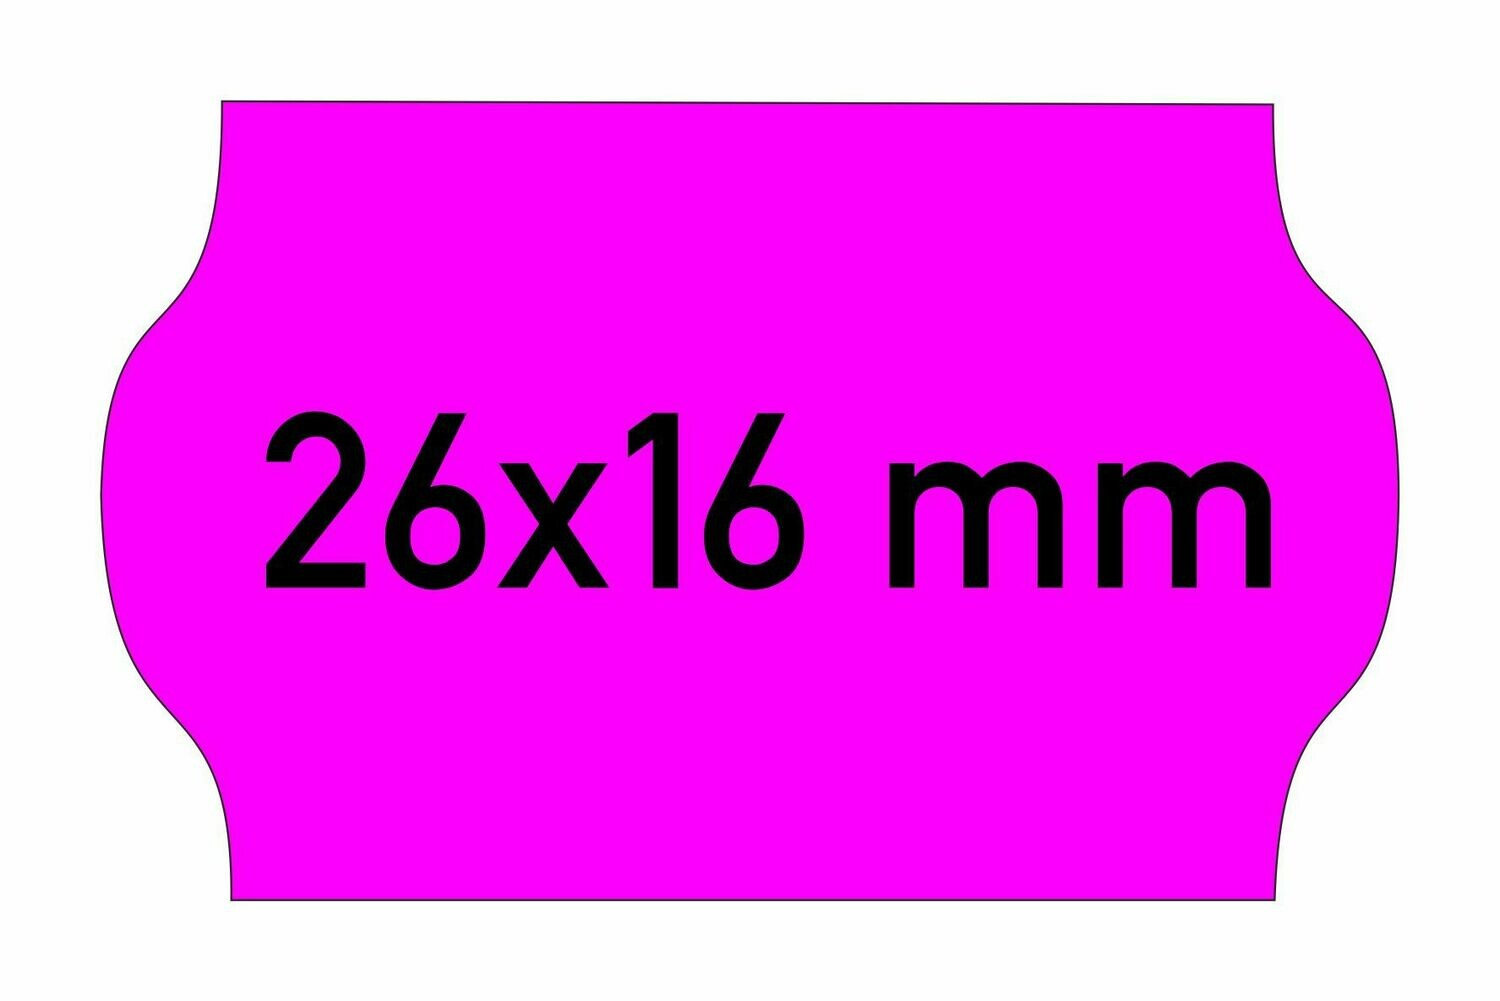 Etiketten 26x16 mm magenta